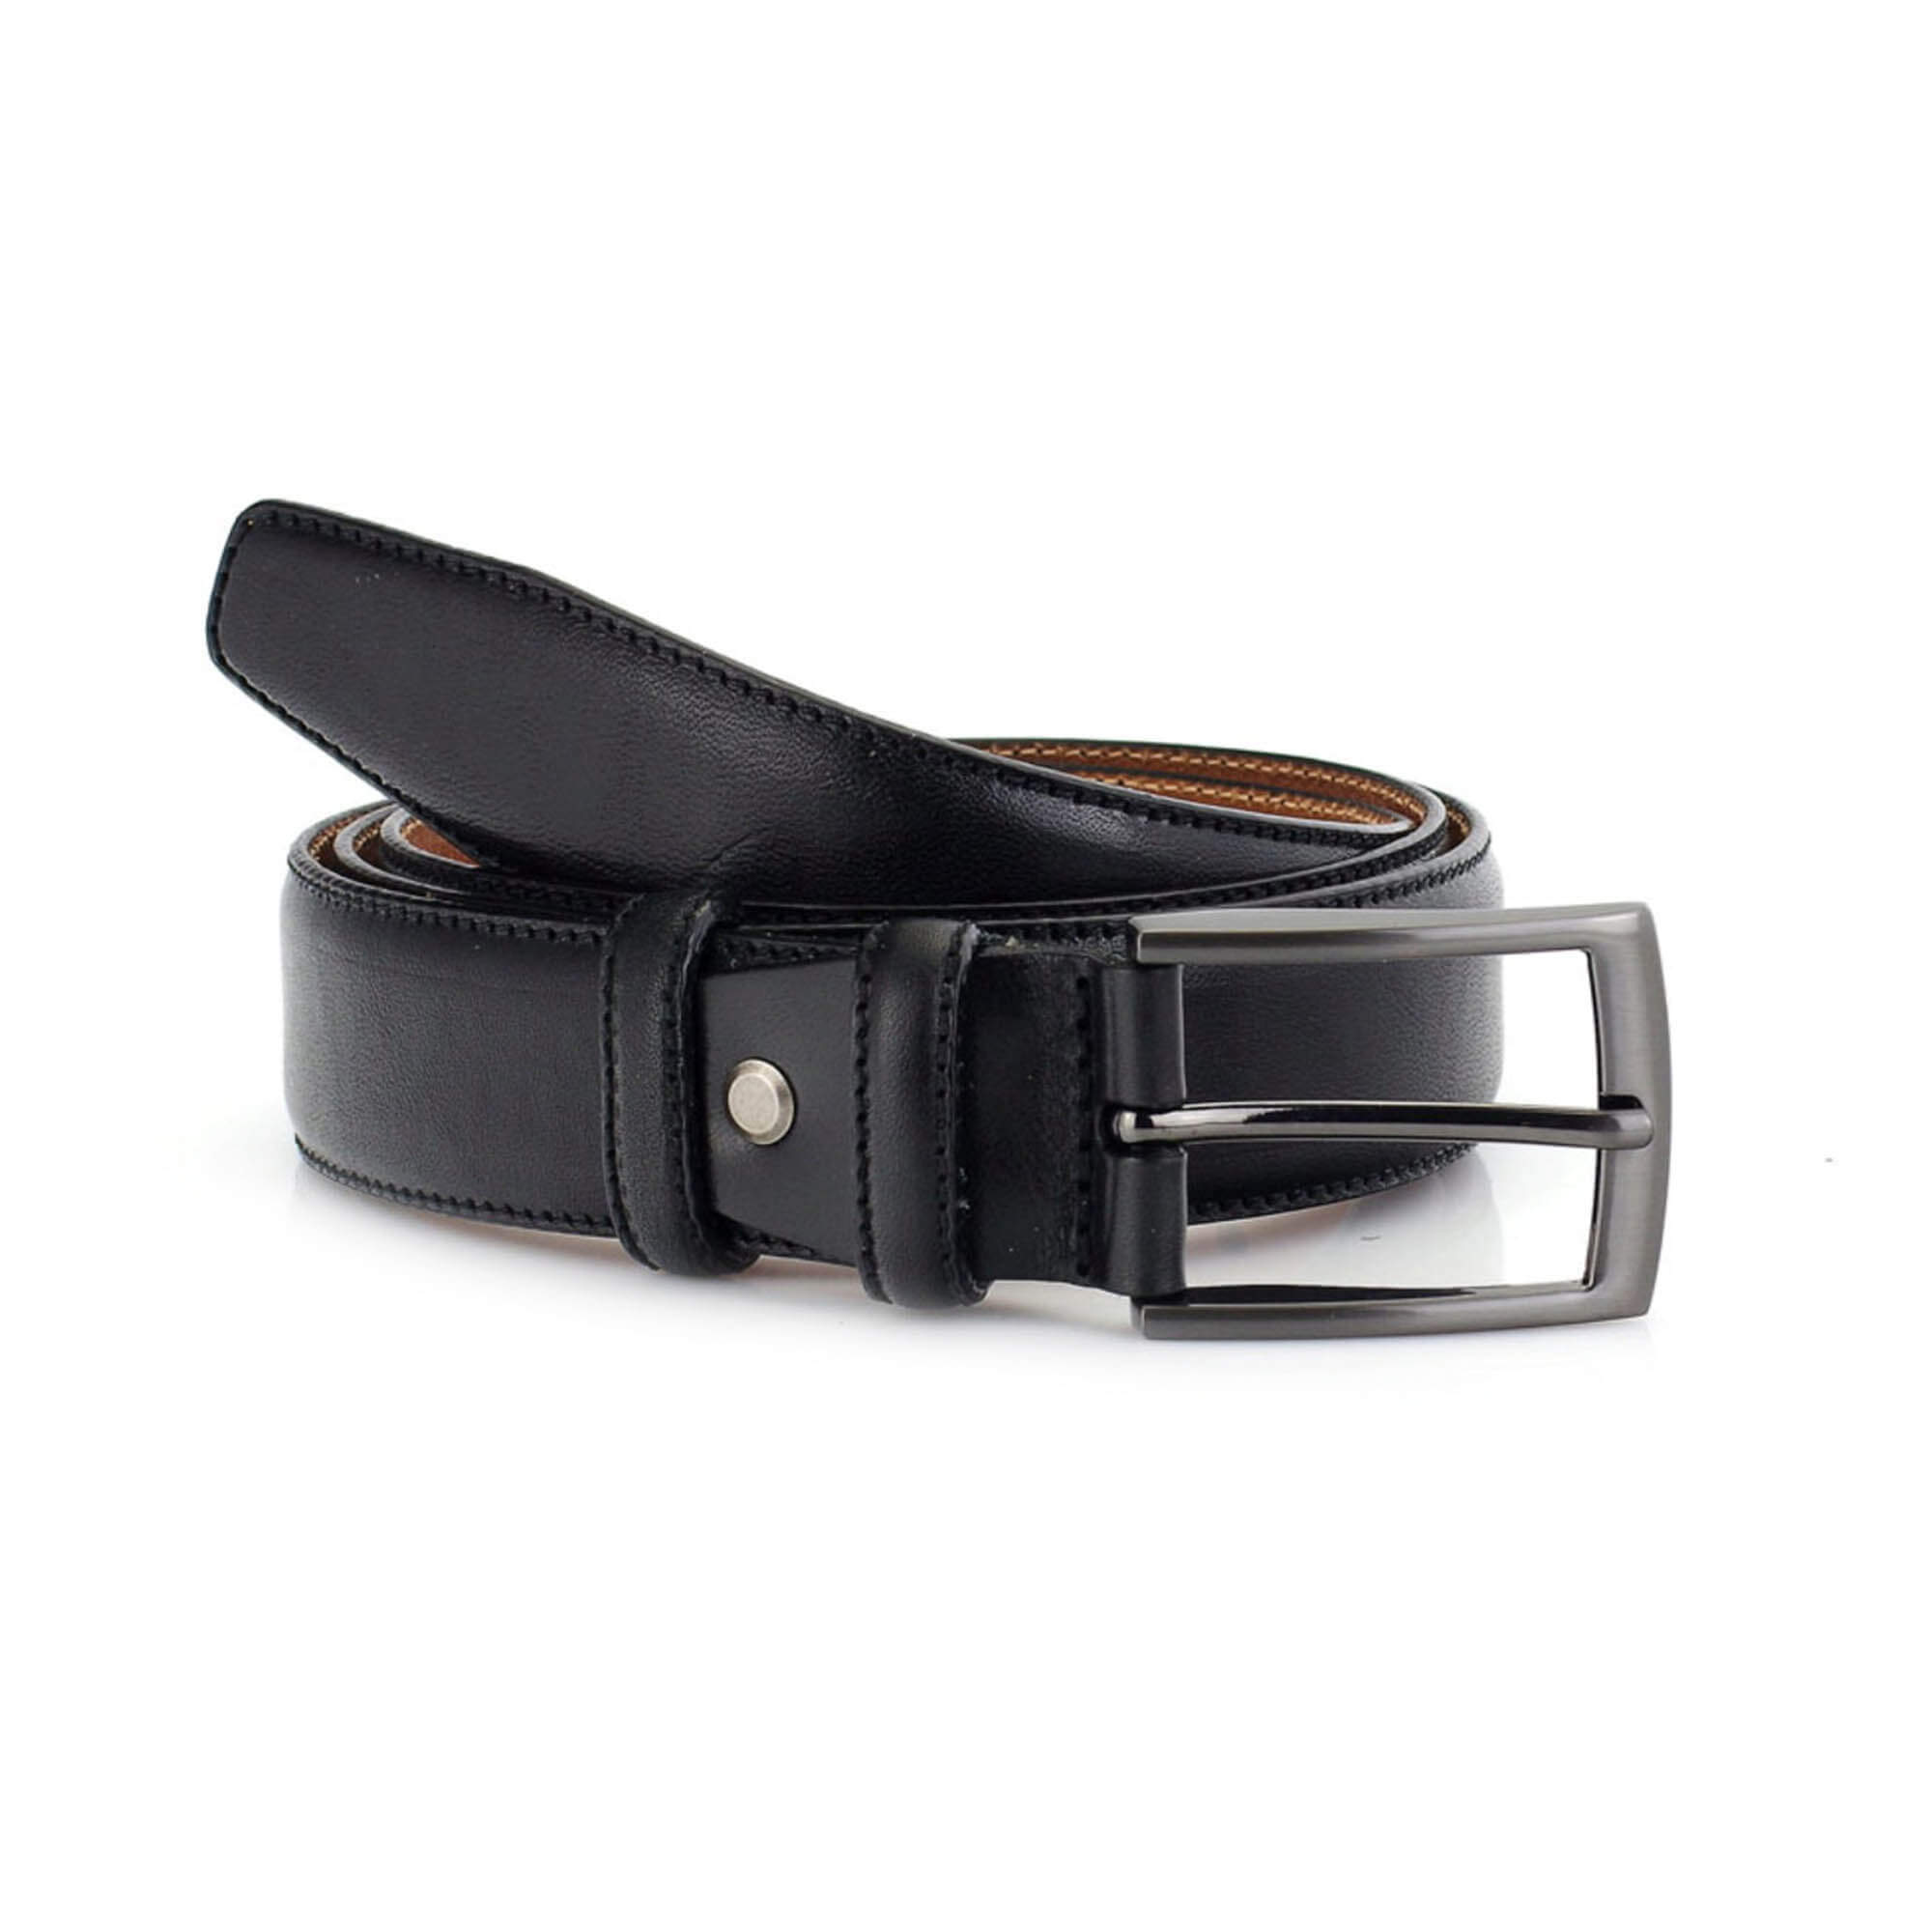 Buy Mens Black Leather Dress Belt - Stitched 3.5 Cm